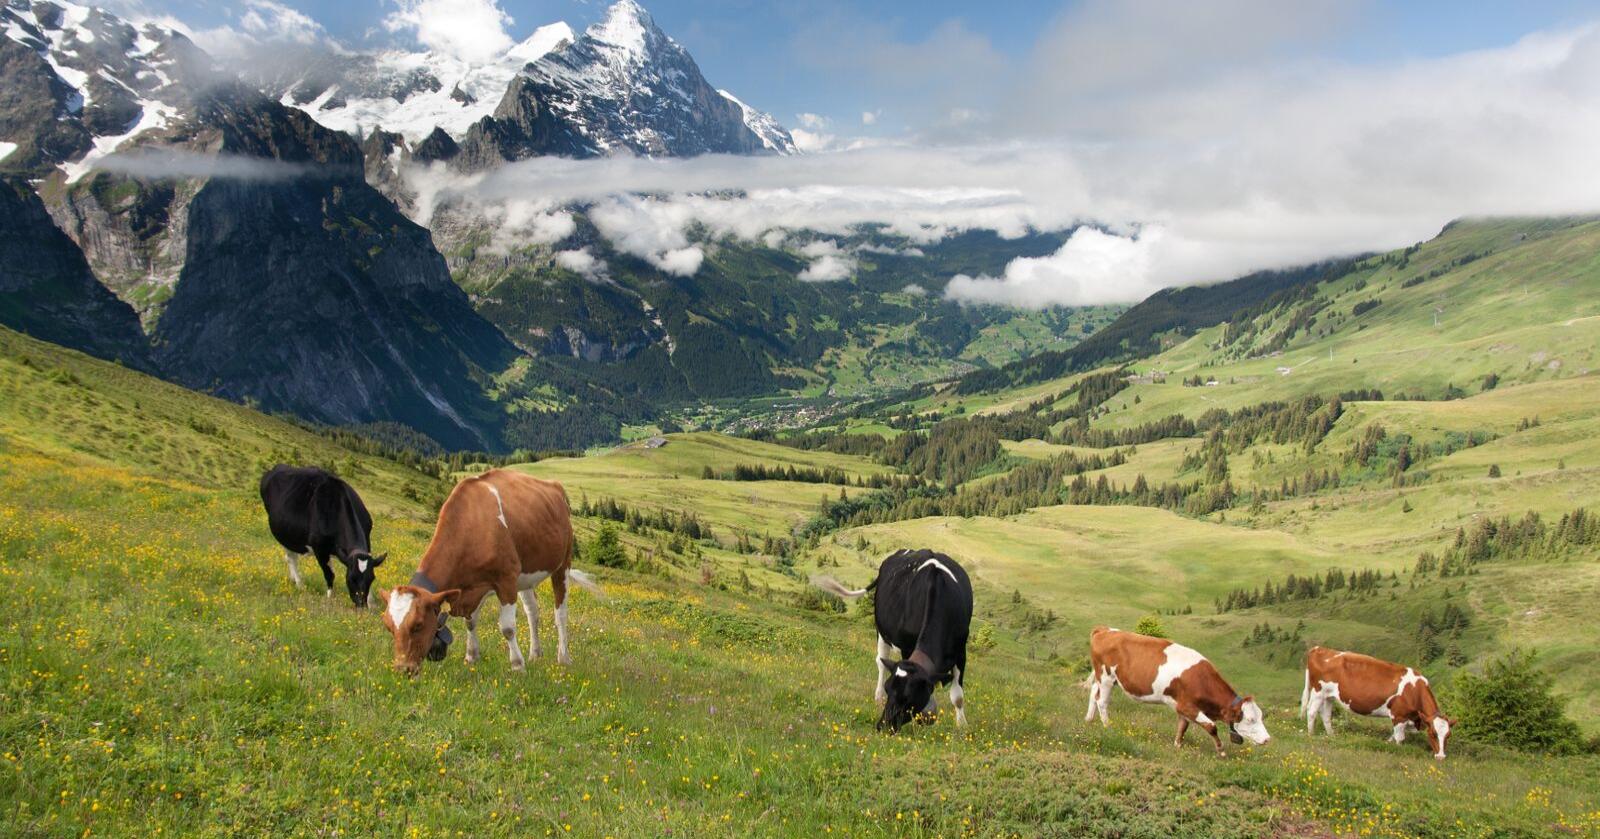 Økende isolasjon: Fremtiden vil vise om Sveits kan holde på sin selvstendighet i økende isolasjon rundt sine nærmeste handelspartnere, skriver innsenderen. Foto: Mostphotos